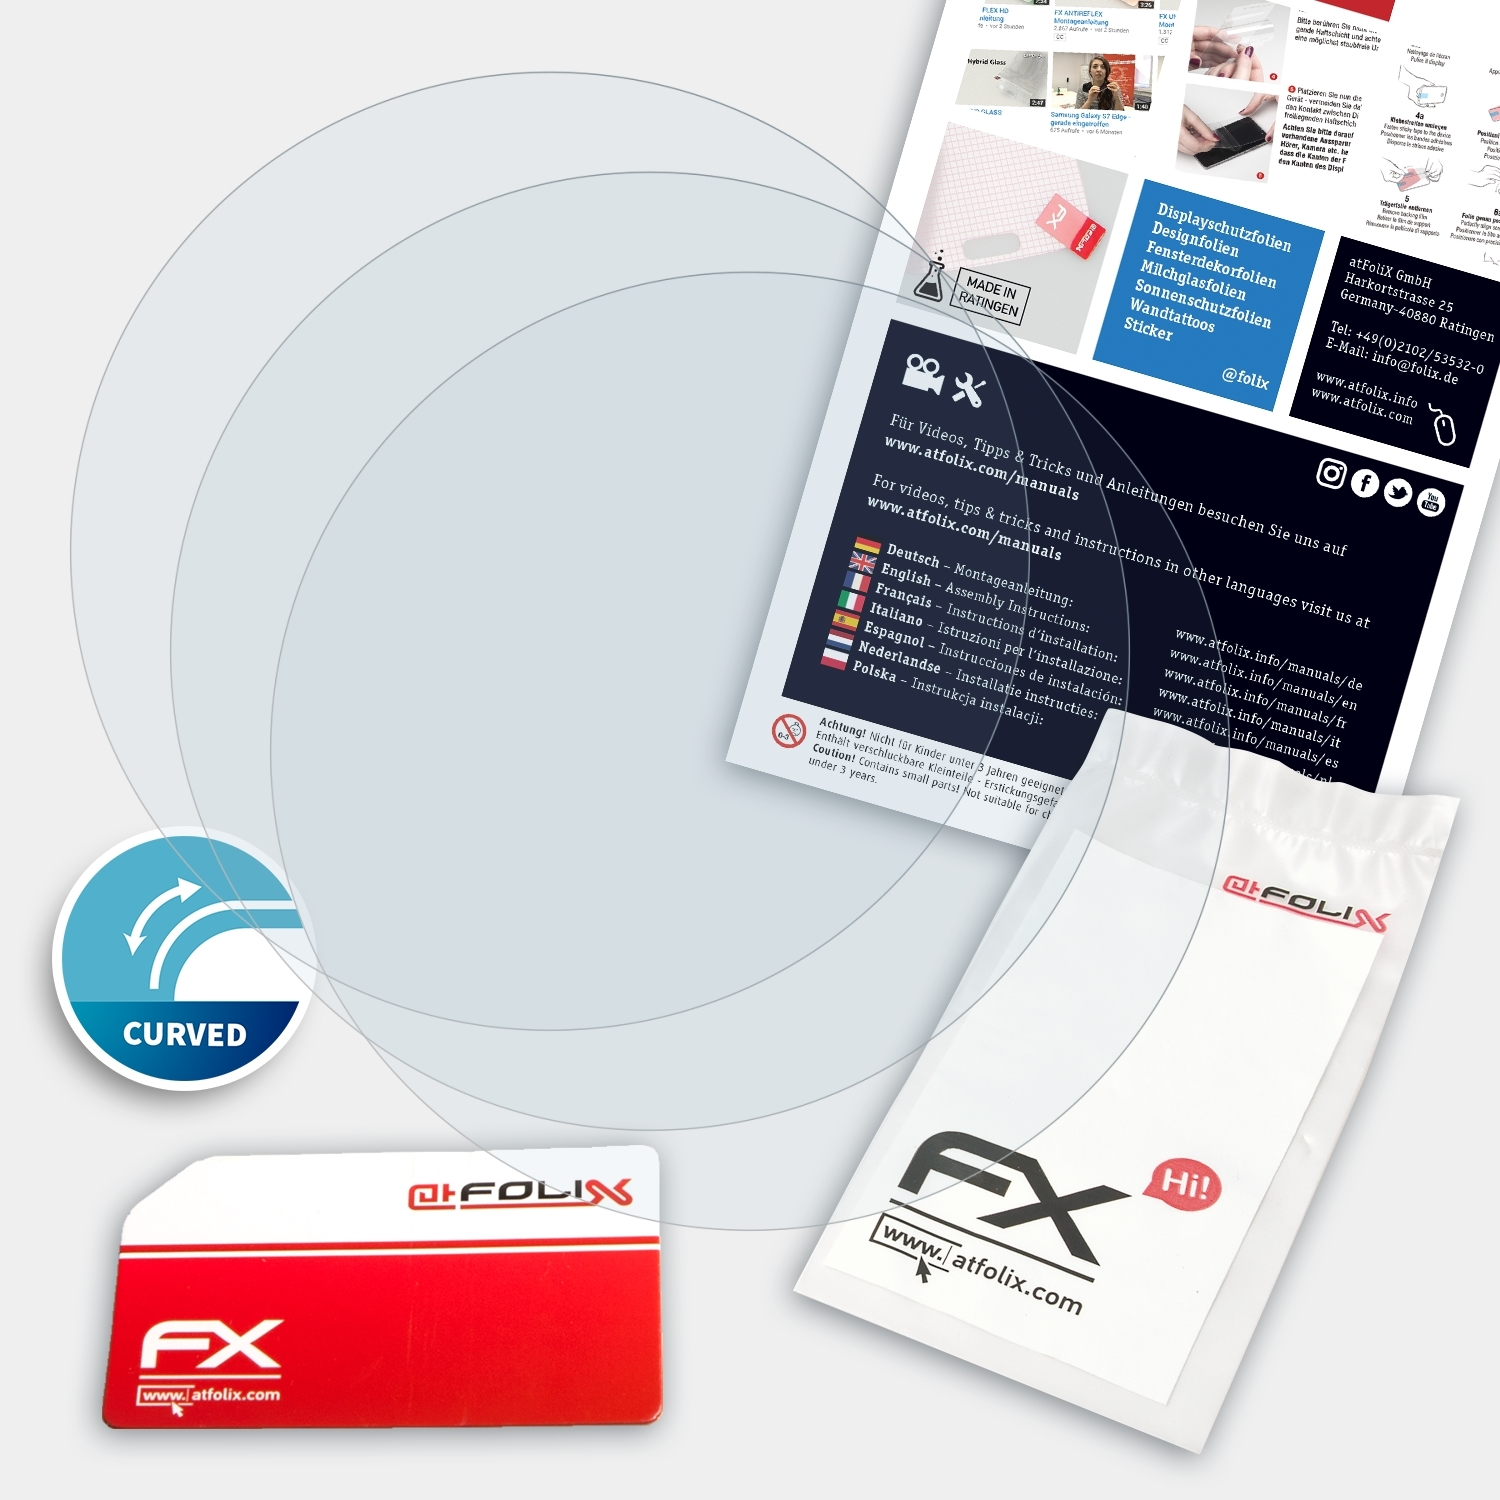 ATFOLIX 3x FX-ActiFleX Displayschutz(für Smartwatch Display (43mm))